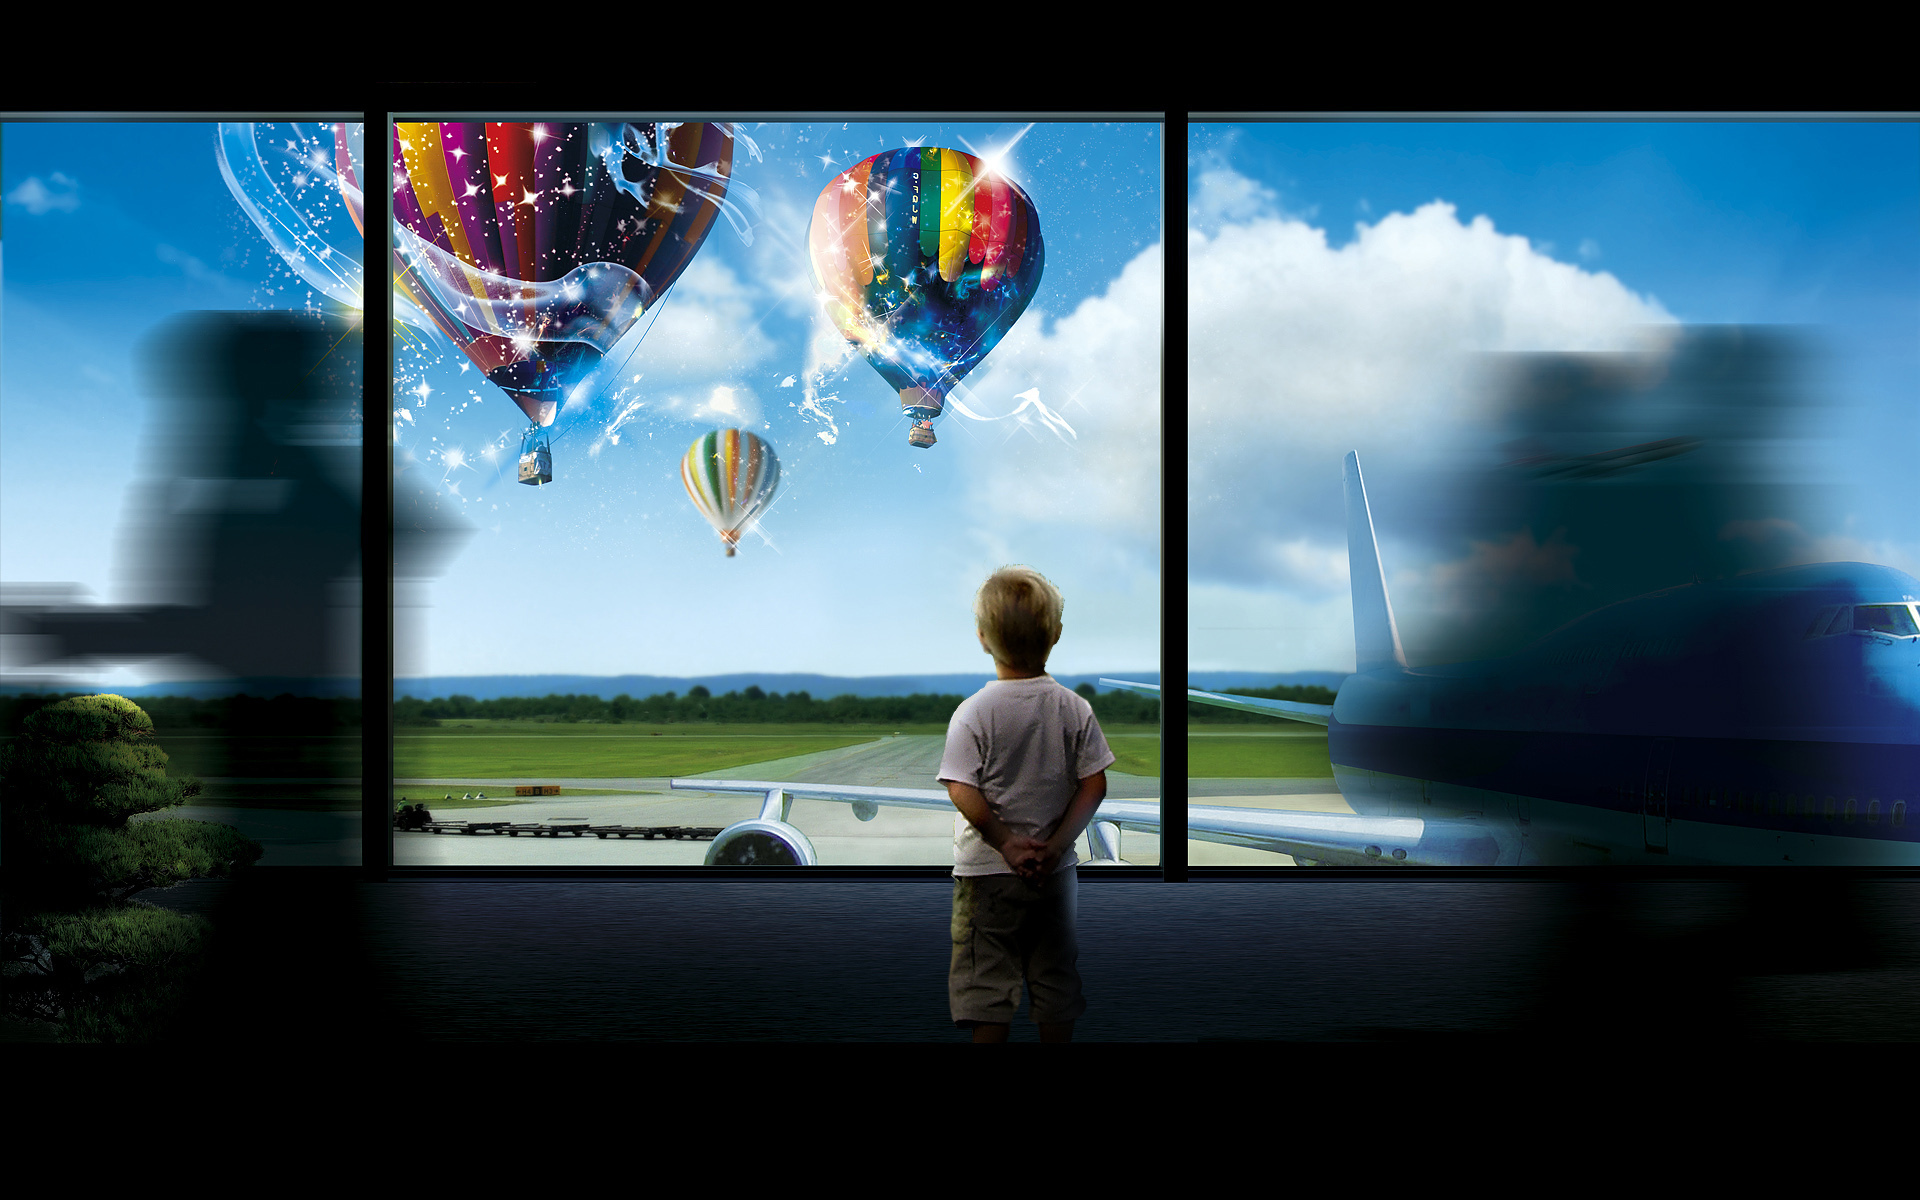 3d обои Мальчик стоит посреди кишащего людьми аэропорта и смотрит в окно, где поднимаются в воздух волшебные воздушные шары  воздушные шары # 23279